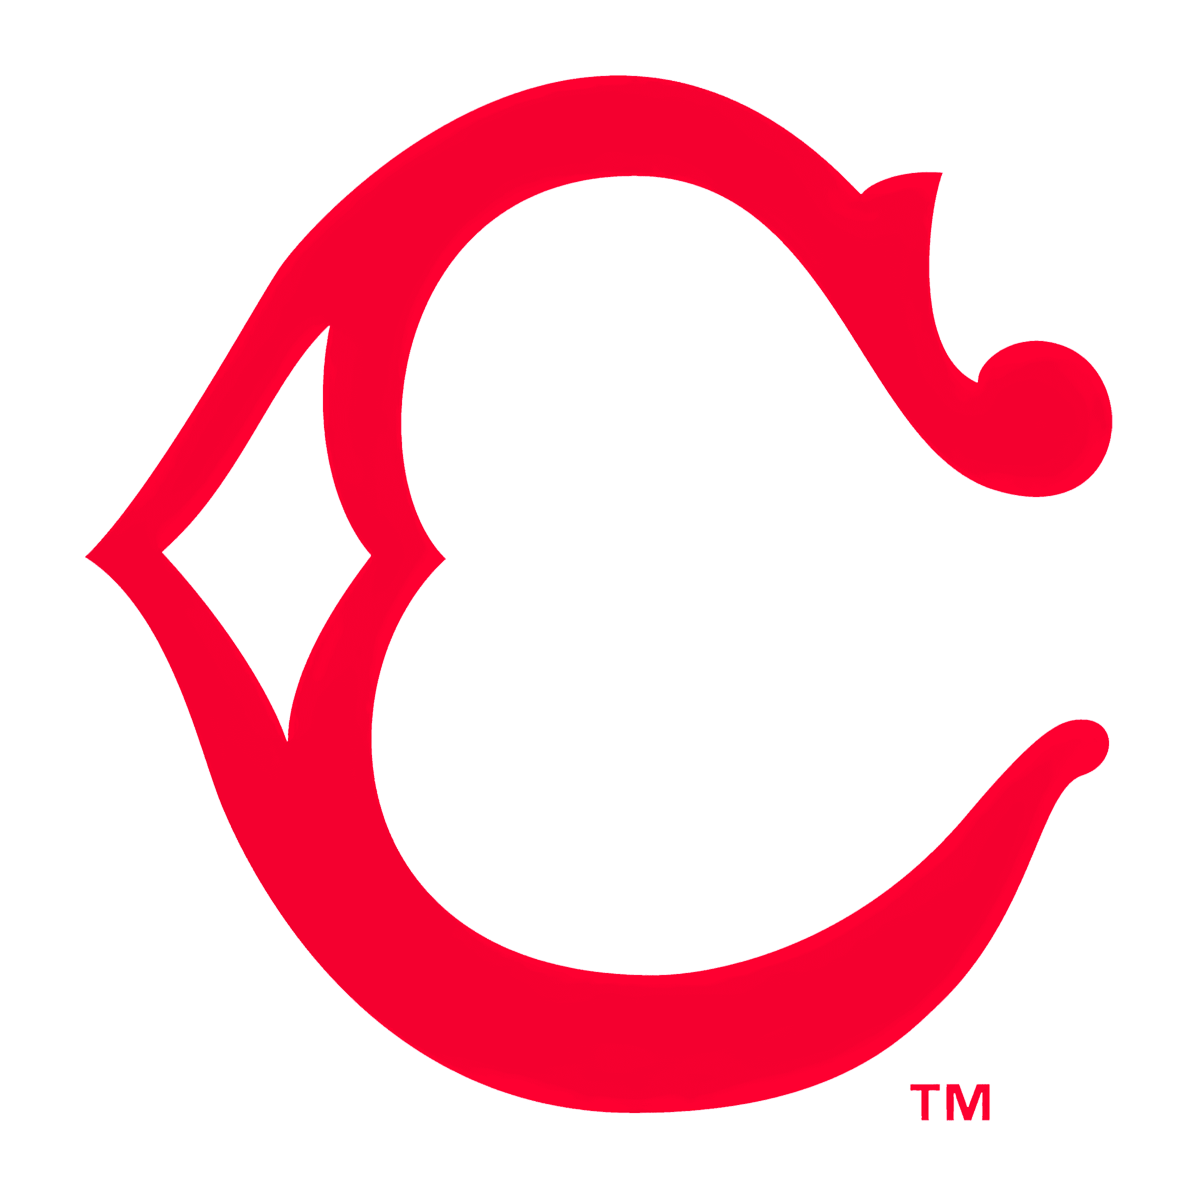 Cincinnati Reds Logo 1906-1907